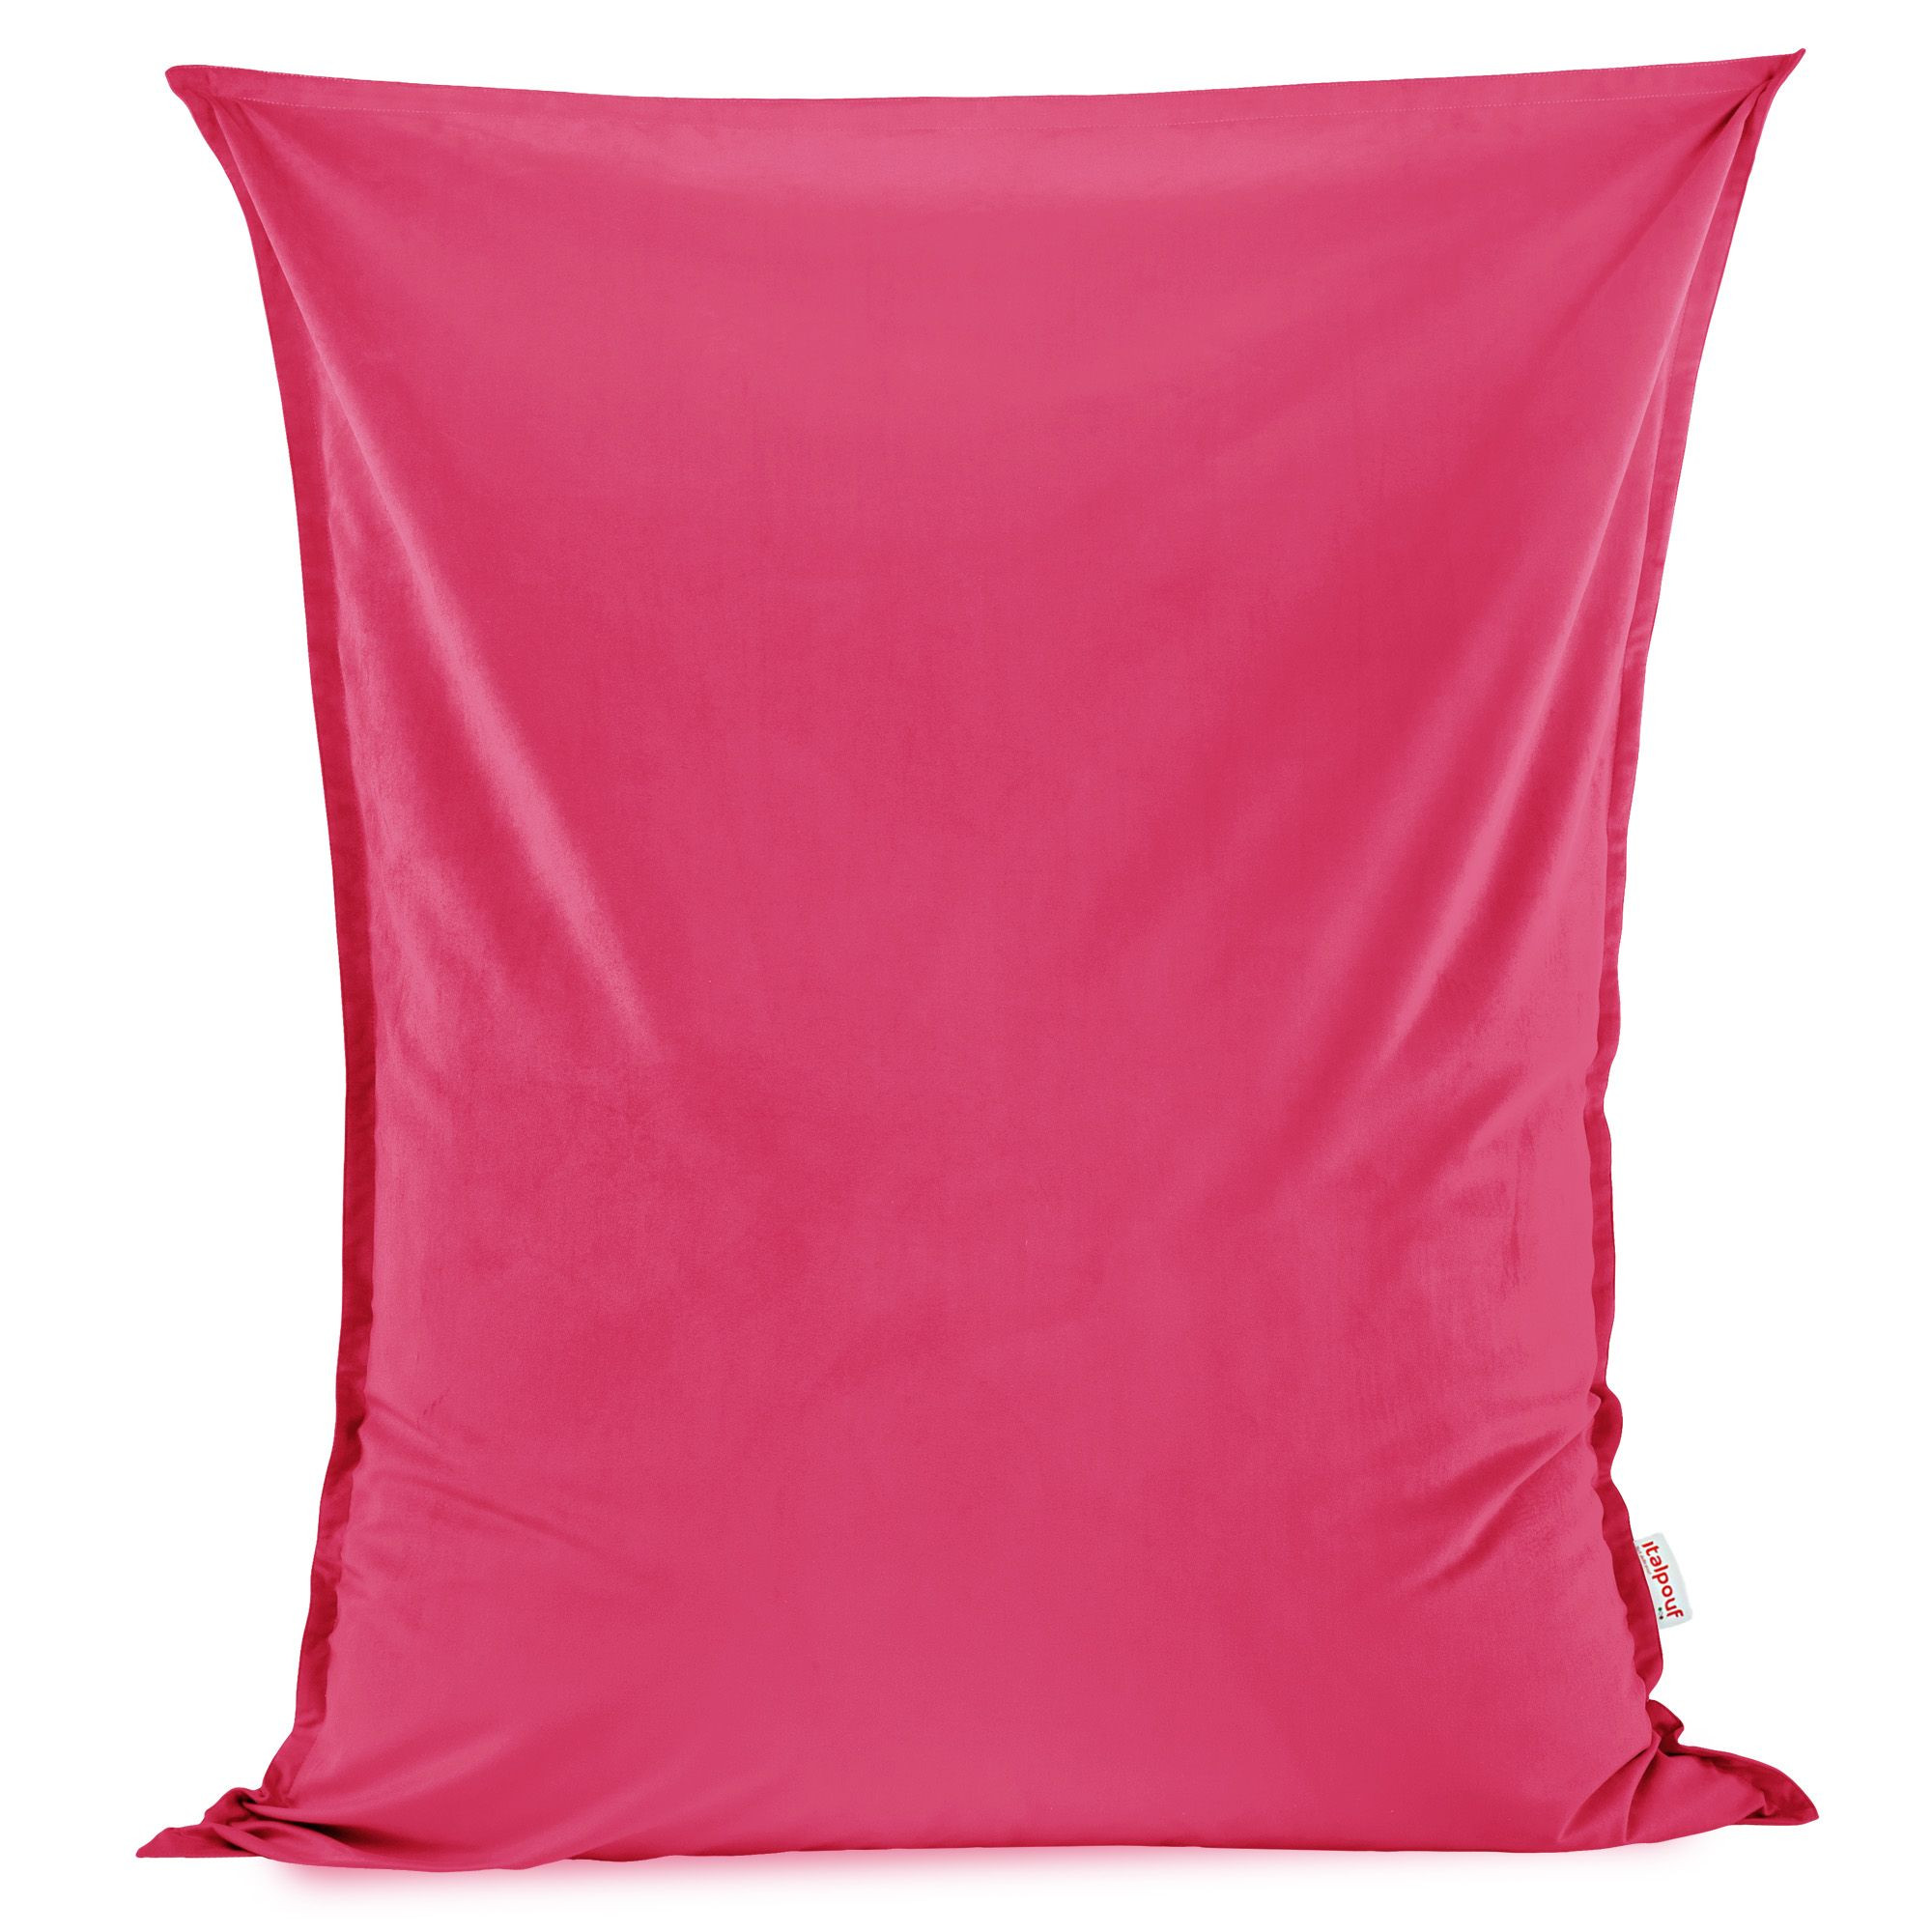 Polštář na sezení růžový plyš